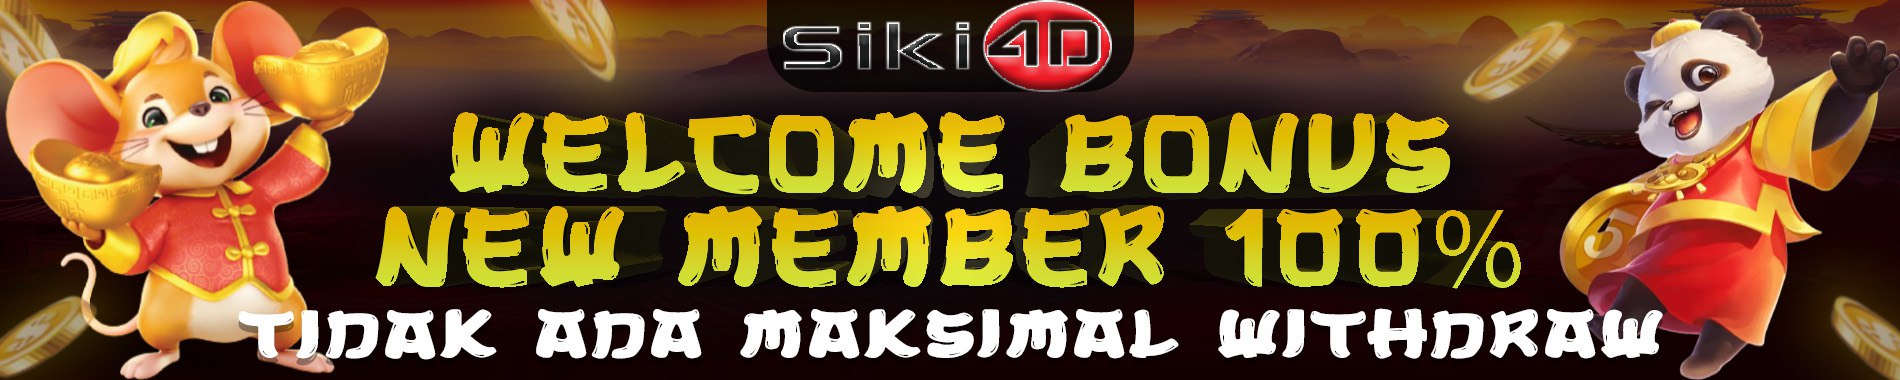 promo 100% new member siki4d